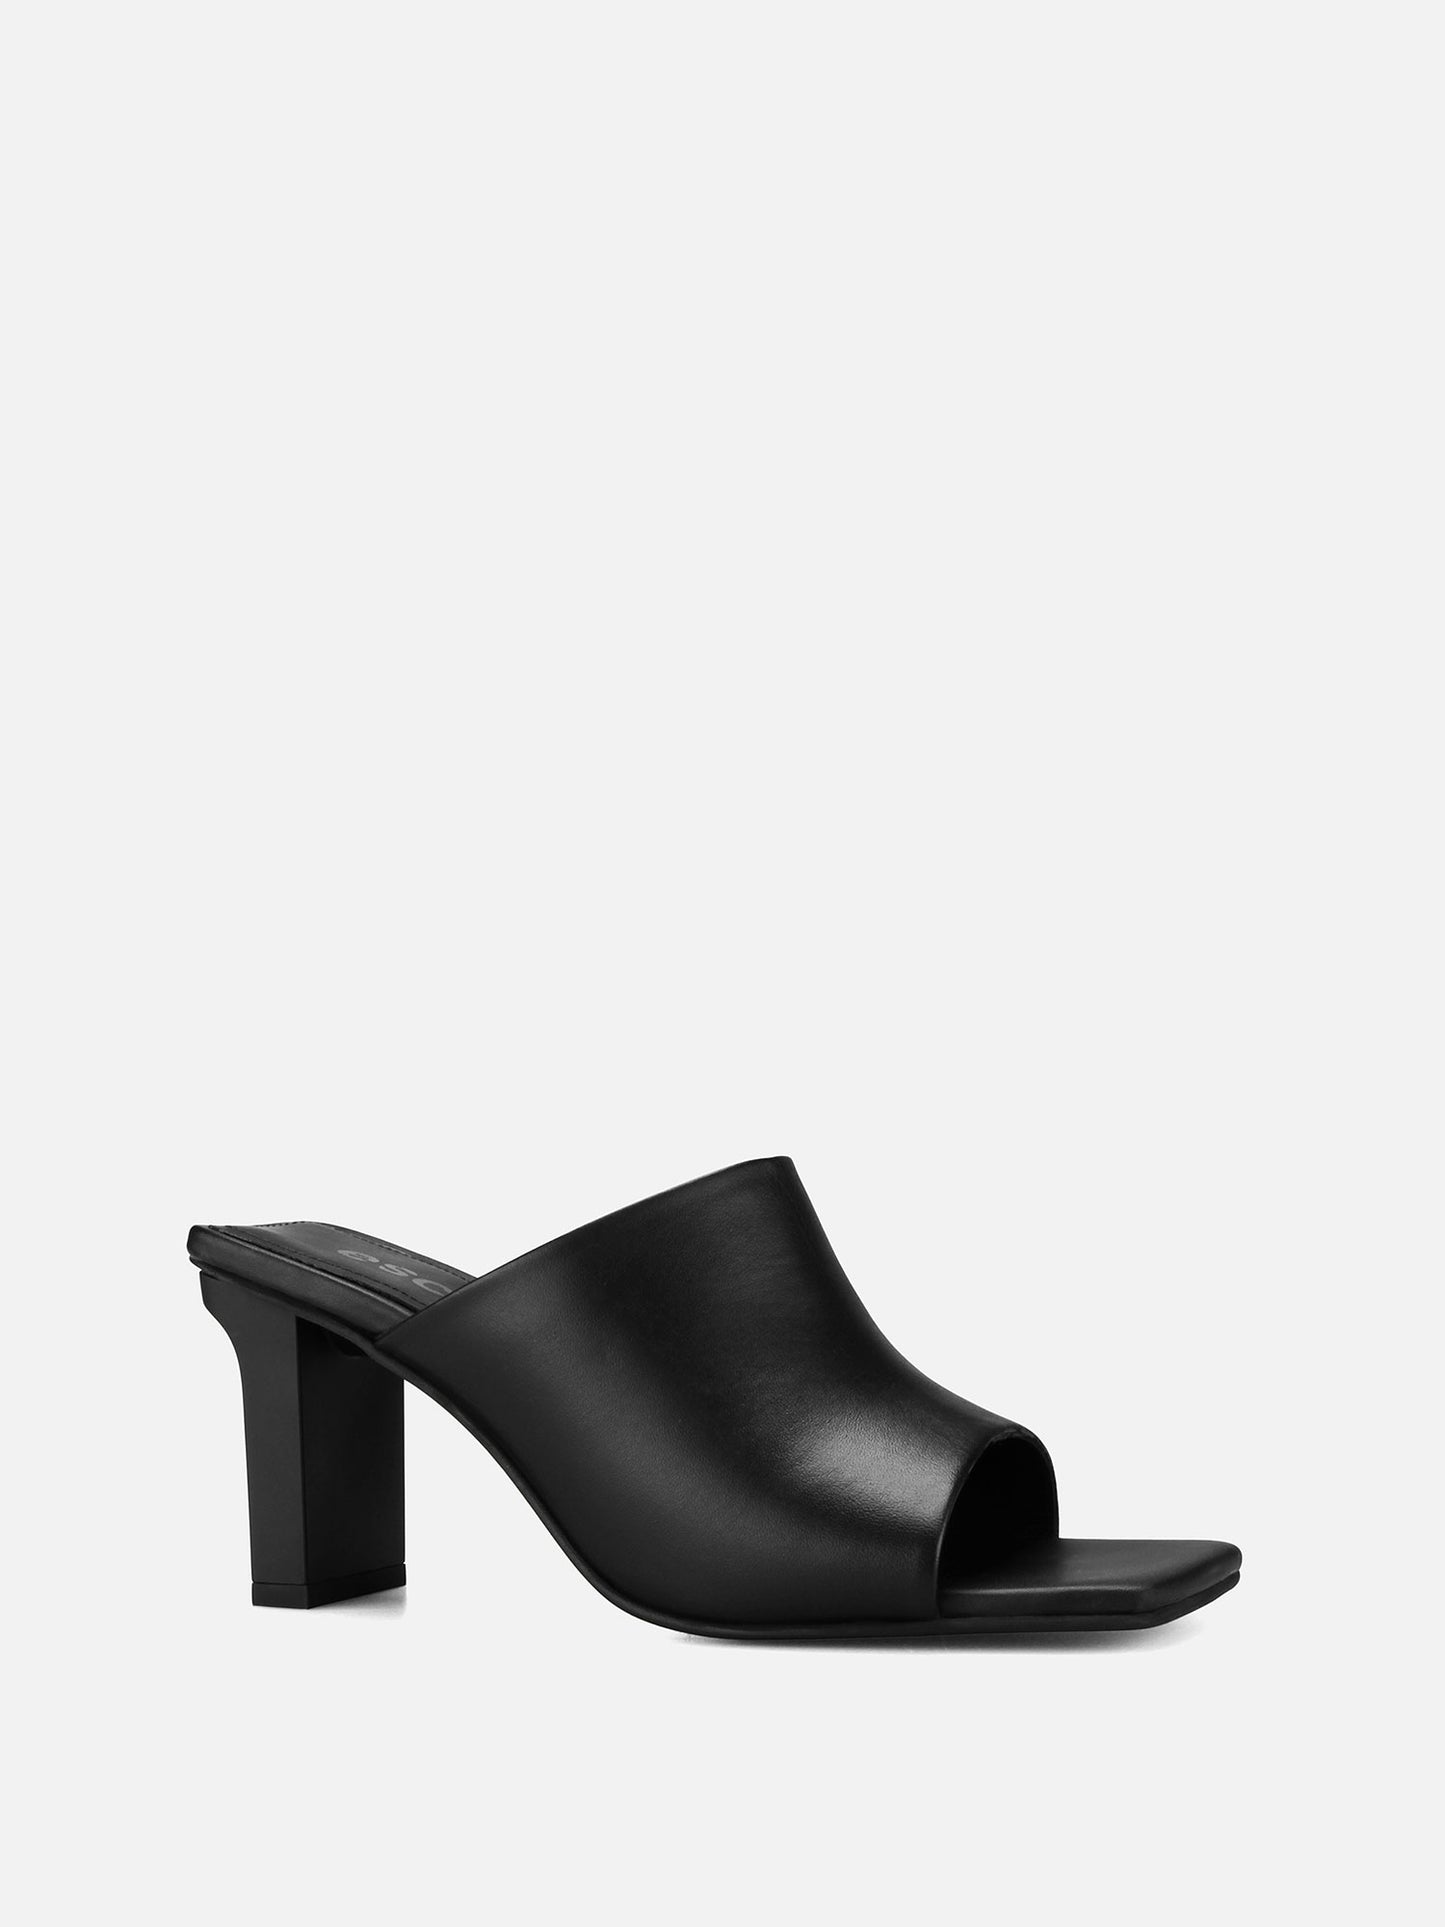 BESSIE Leather Sandals - Black